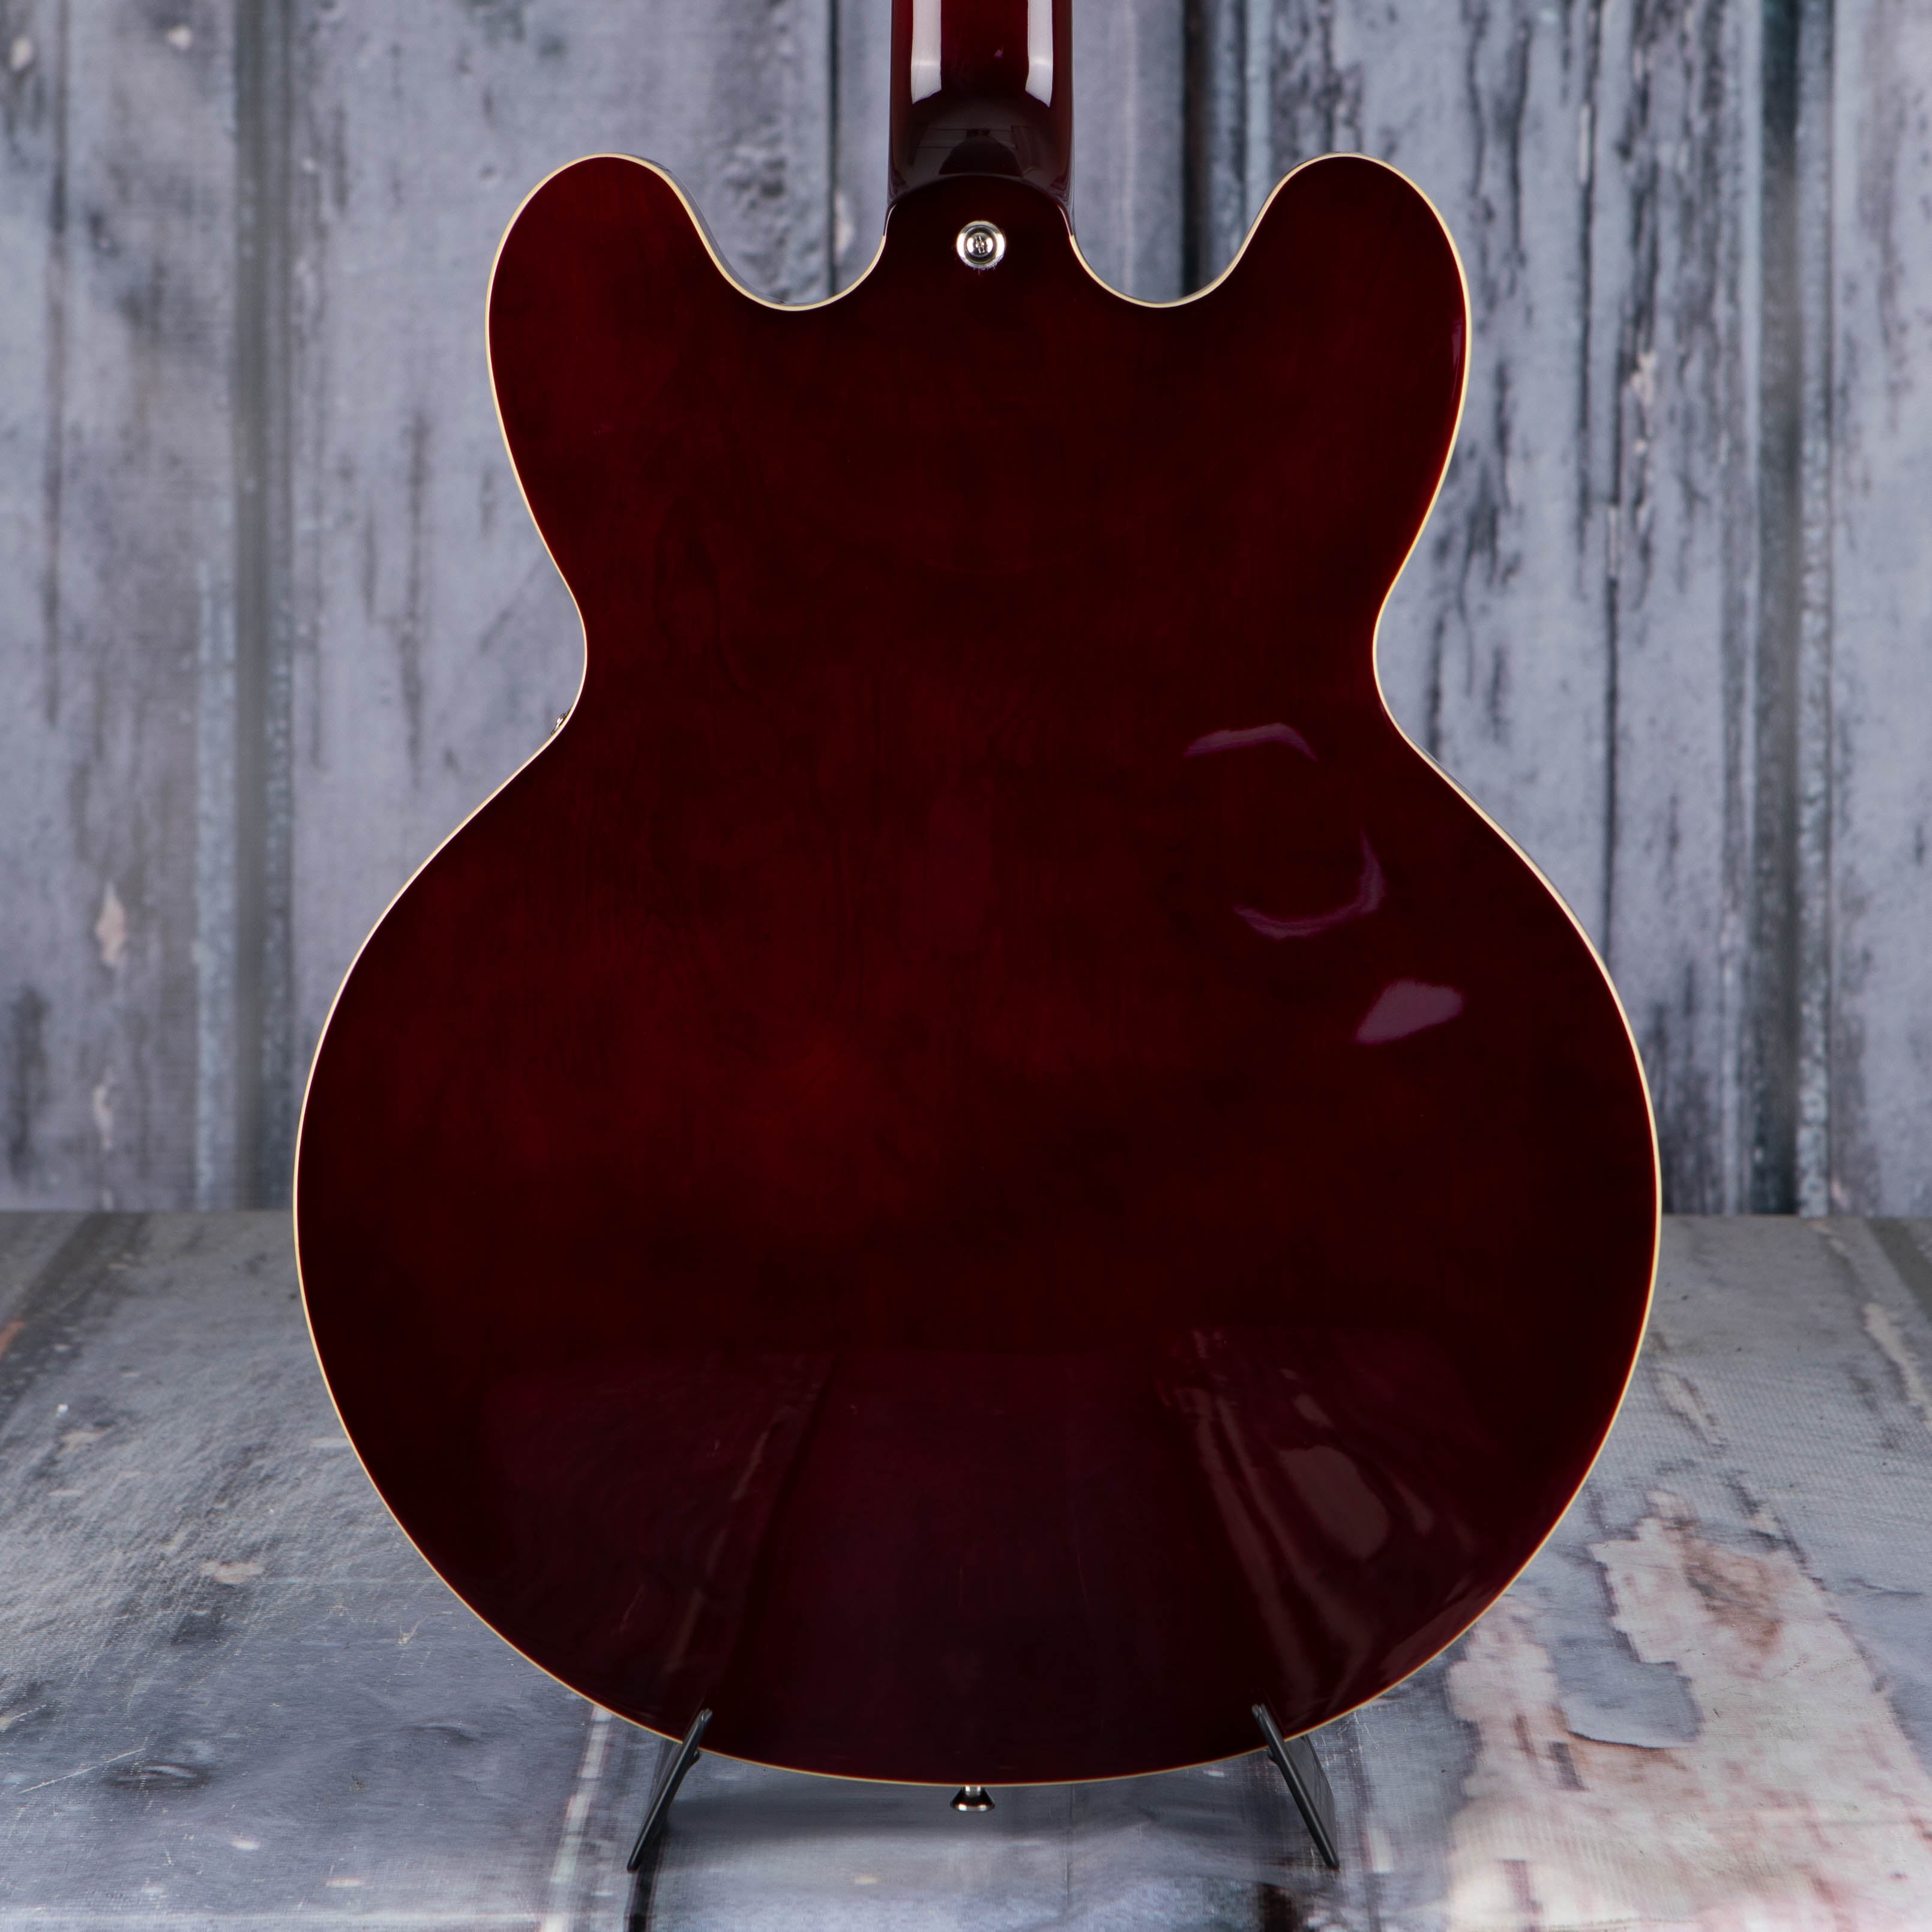 Epiphone Noel Gallagher Riviera Semi-Hollowbody Guitar, Dark Wine Red, back closeup